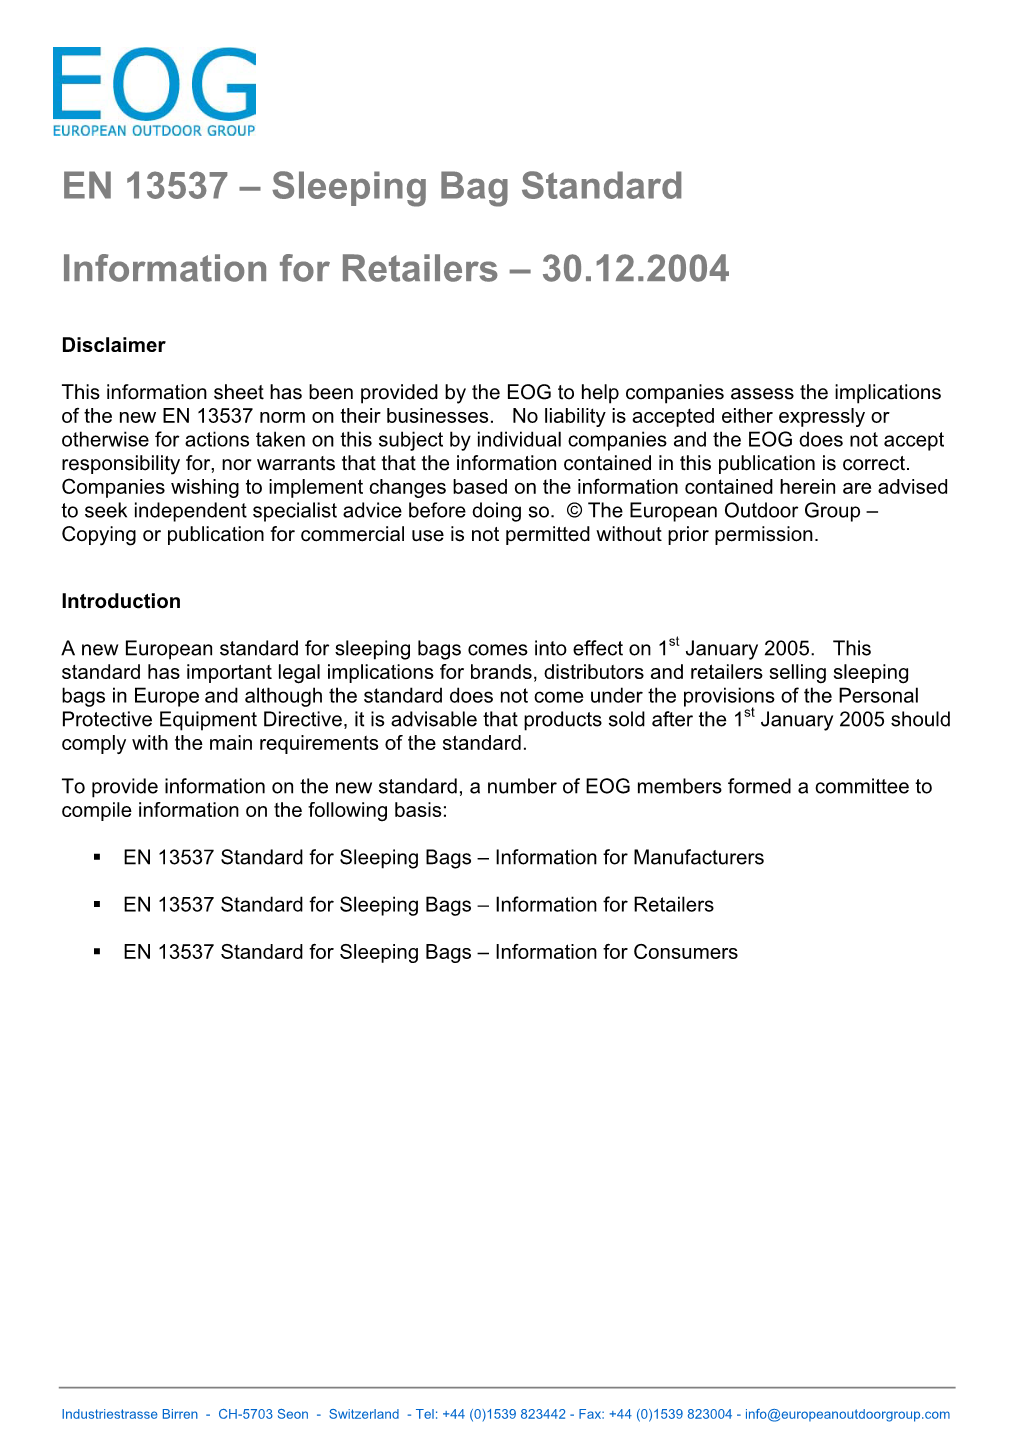 EN13537 Info for Retailers